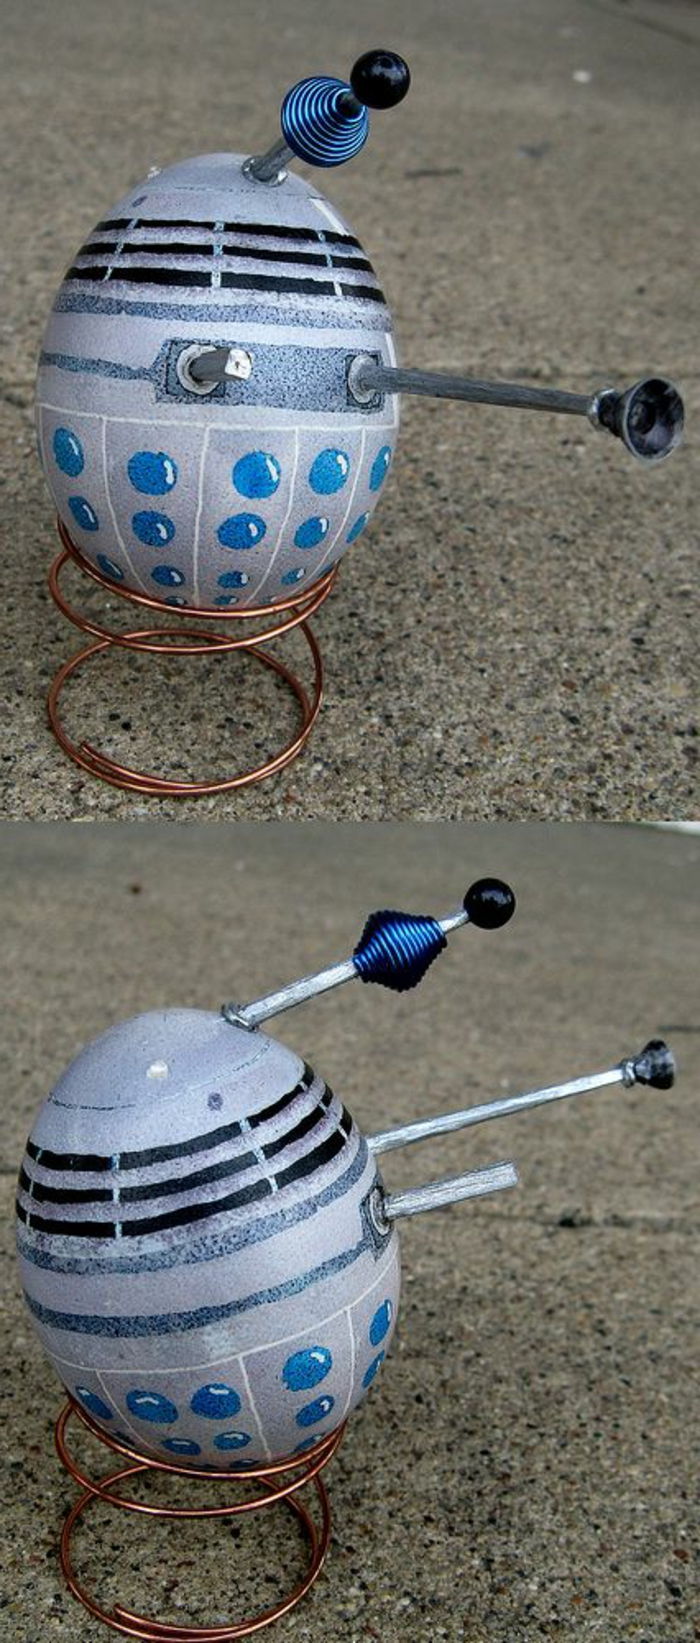 sivi sladoled iz serije Star Wars z nekaj lepljenimi deli - velikonočna jajca smešna